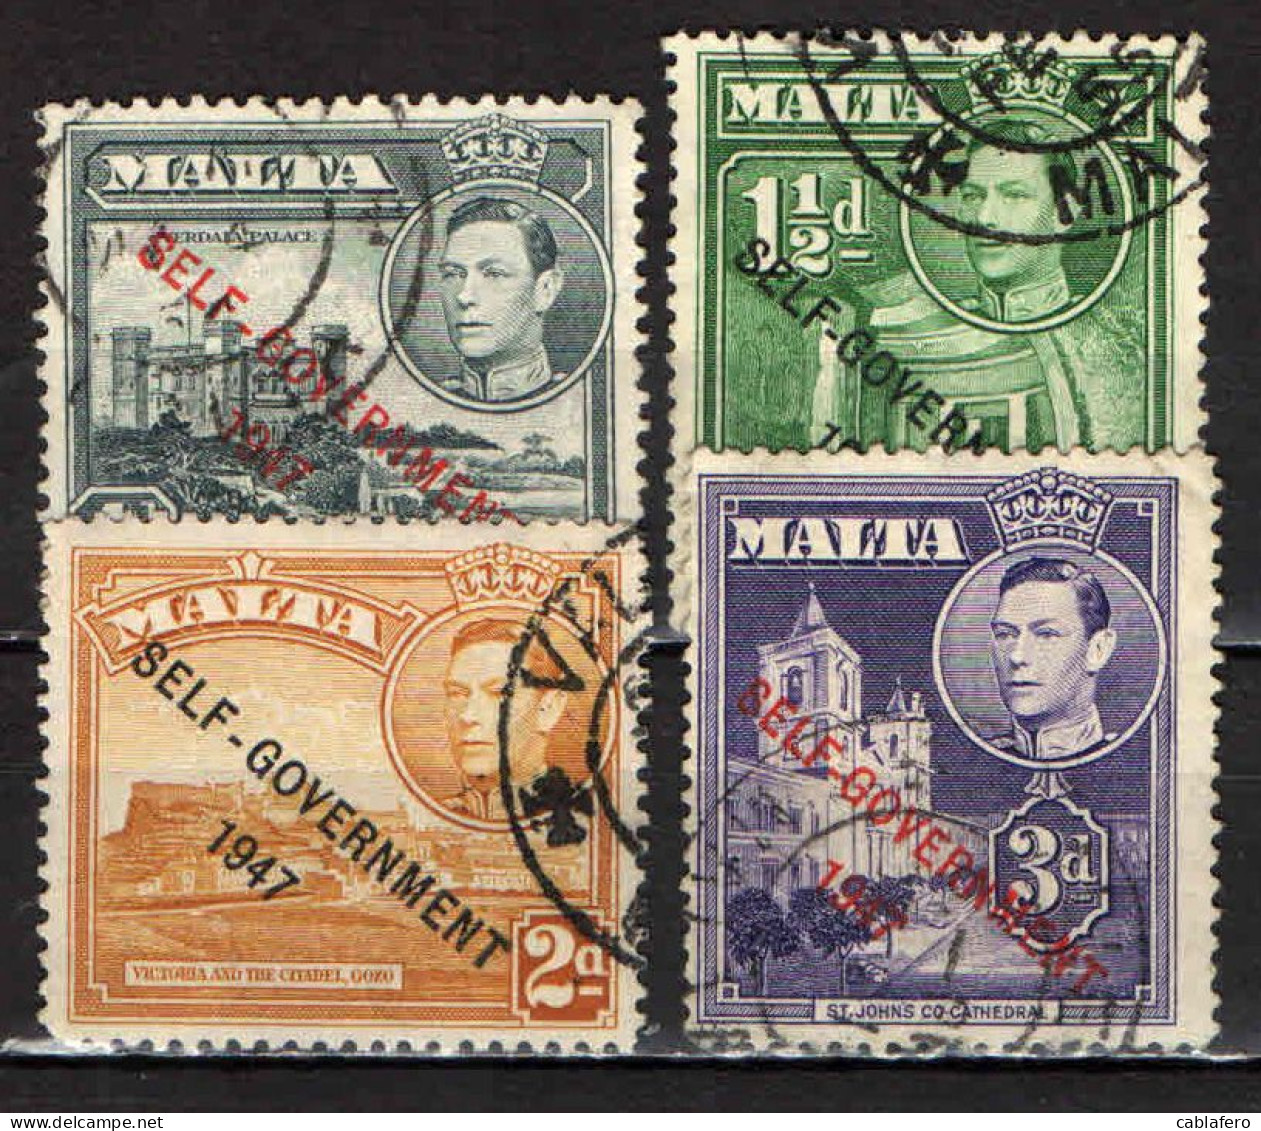 MALTA - 1953 - EFFIGIE DEL RE GIORGIO VI E VISTE DI MALTA - SOVRASTAMPATI "SELF GOVERNMENT 1947" - USATI - Malte (...-1964)